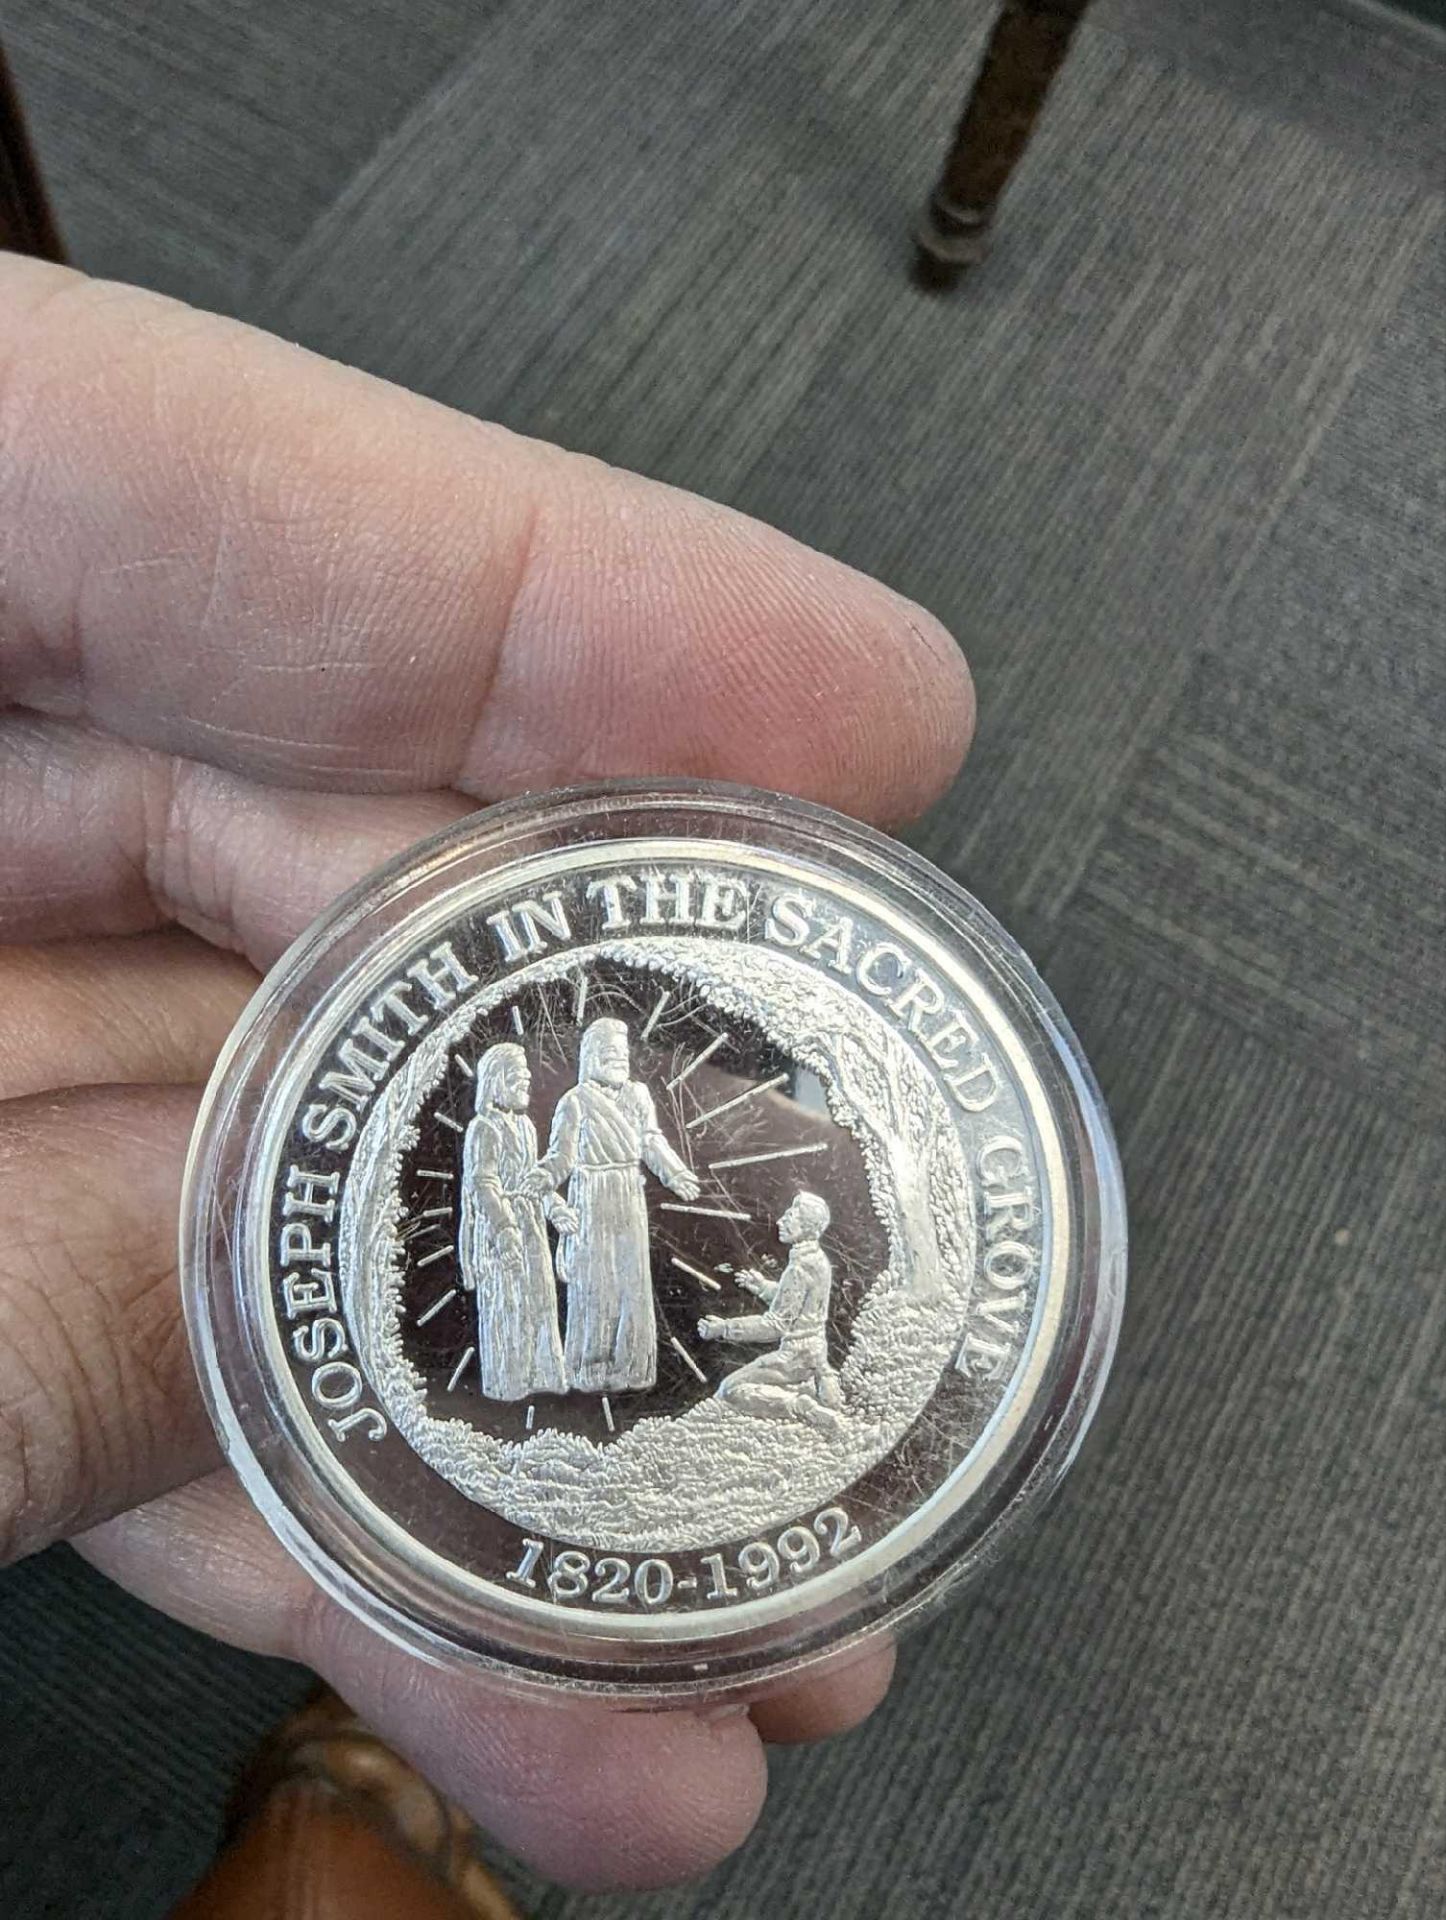 Joseph Smith sacred Grove 1 oz coin